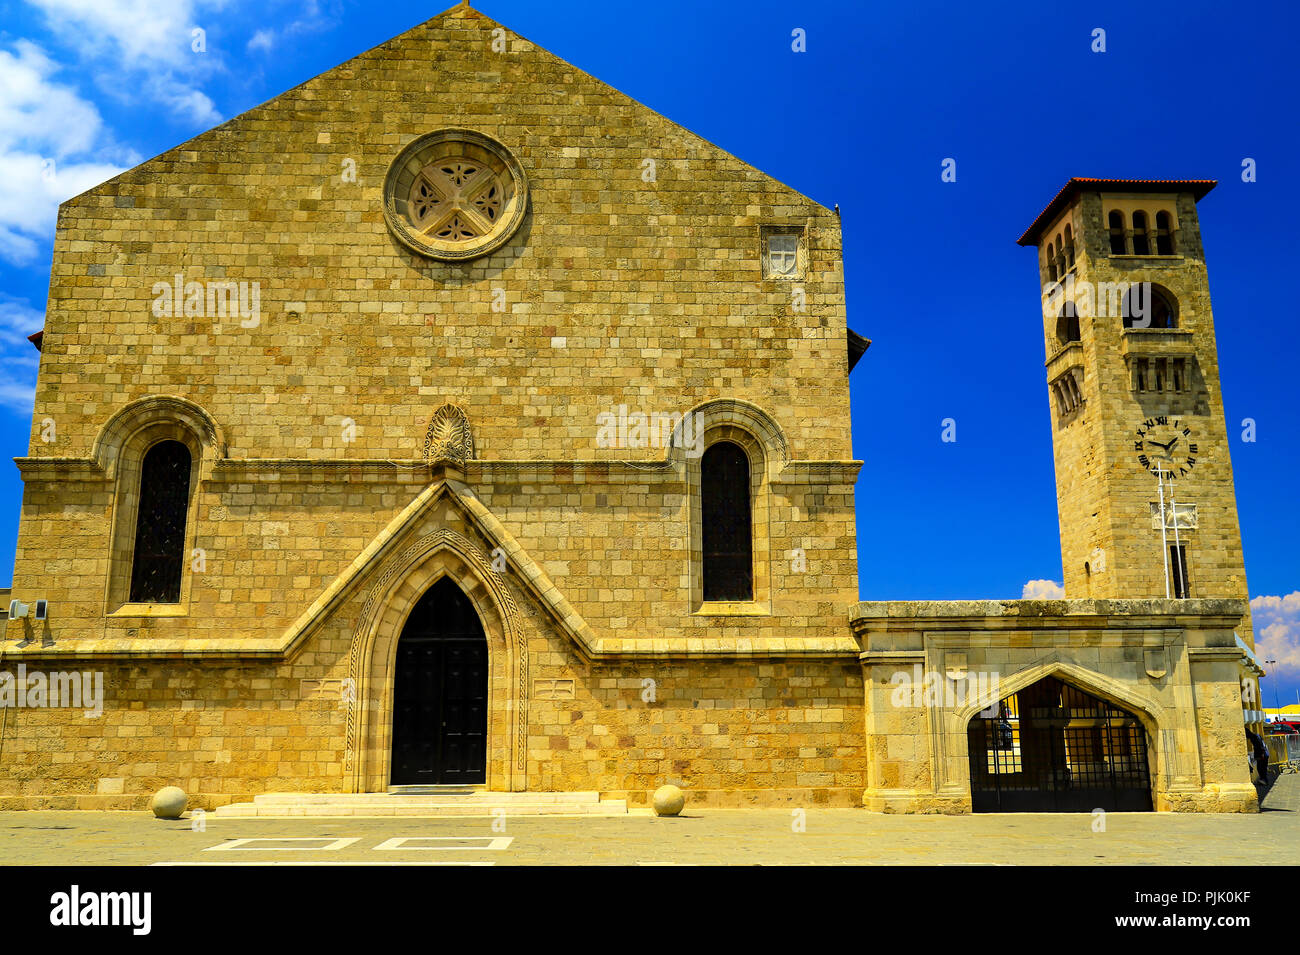 L'Église Orthodoxe médiévale de l'Annonciation de la Sainte Vierge, Rhodes, Grèce - un bel endroit pour faire des excursions, voyages, loisirs Banque D'Images